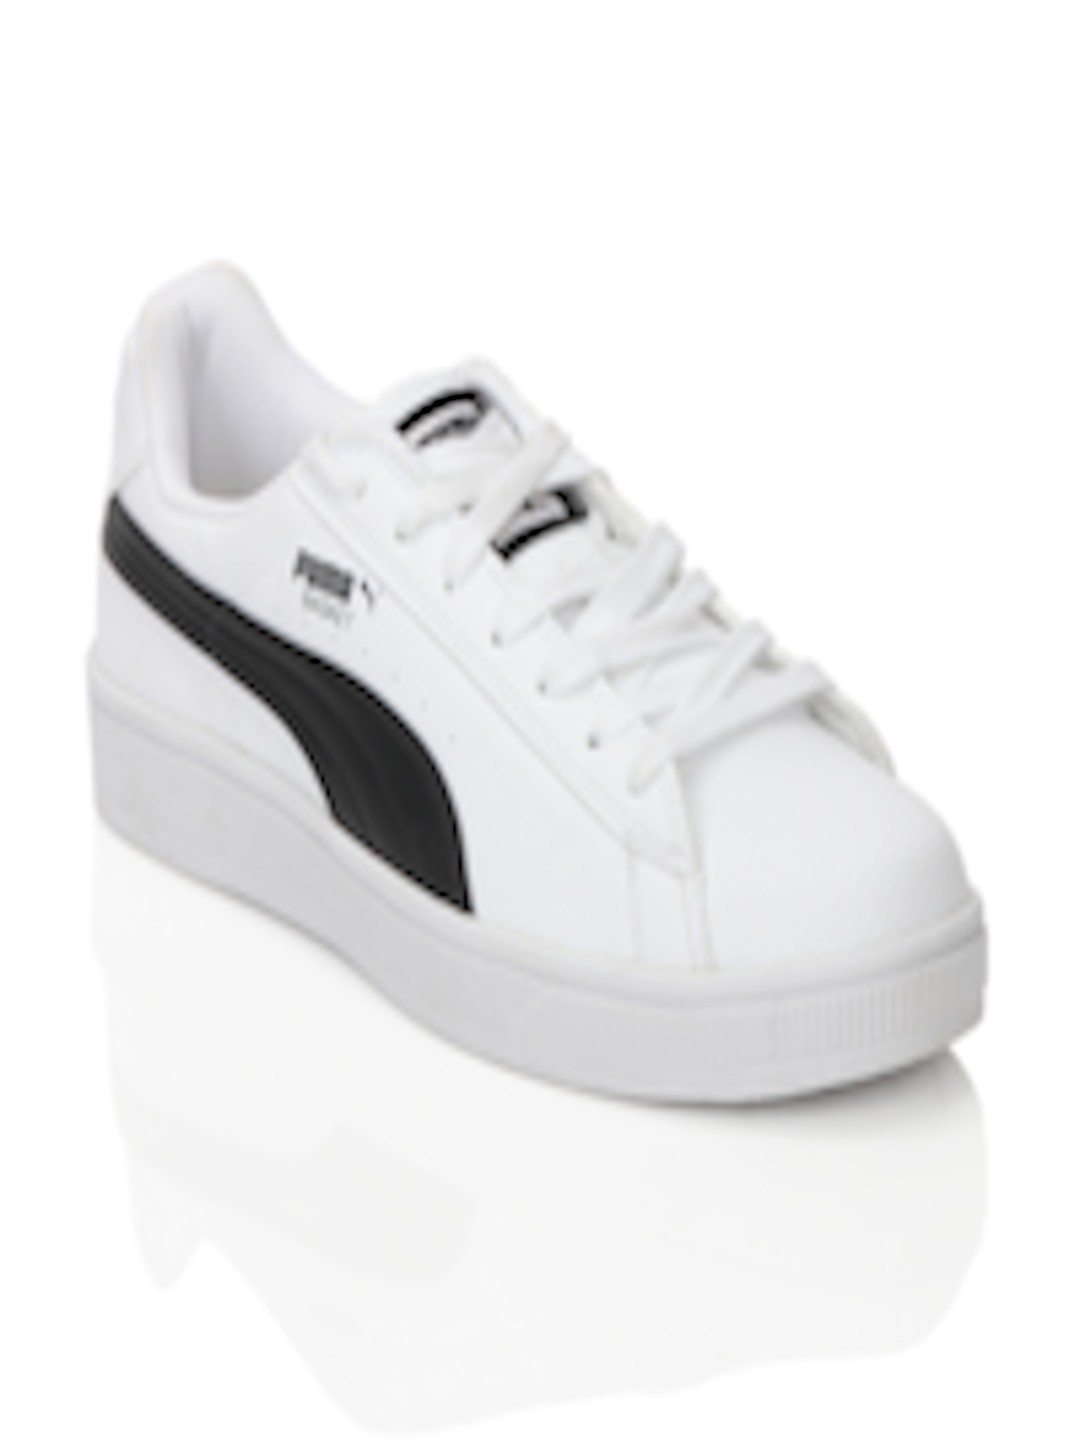 Buy Puma Men II Biz White Shoes - Casual Shoes for Men 33830 | Myntra